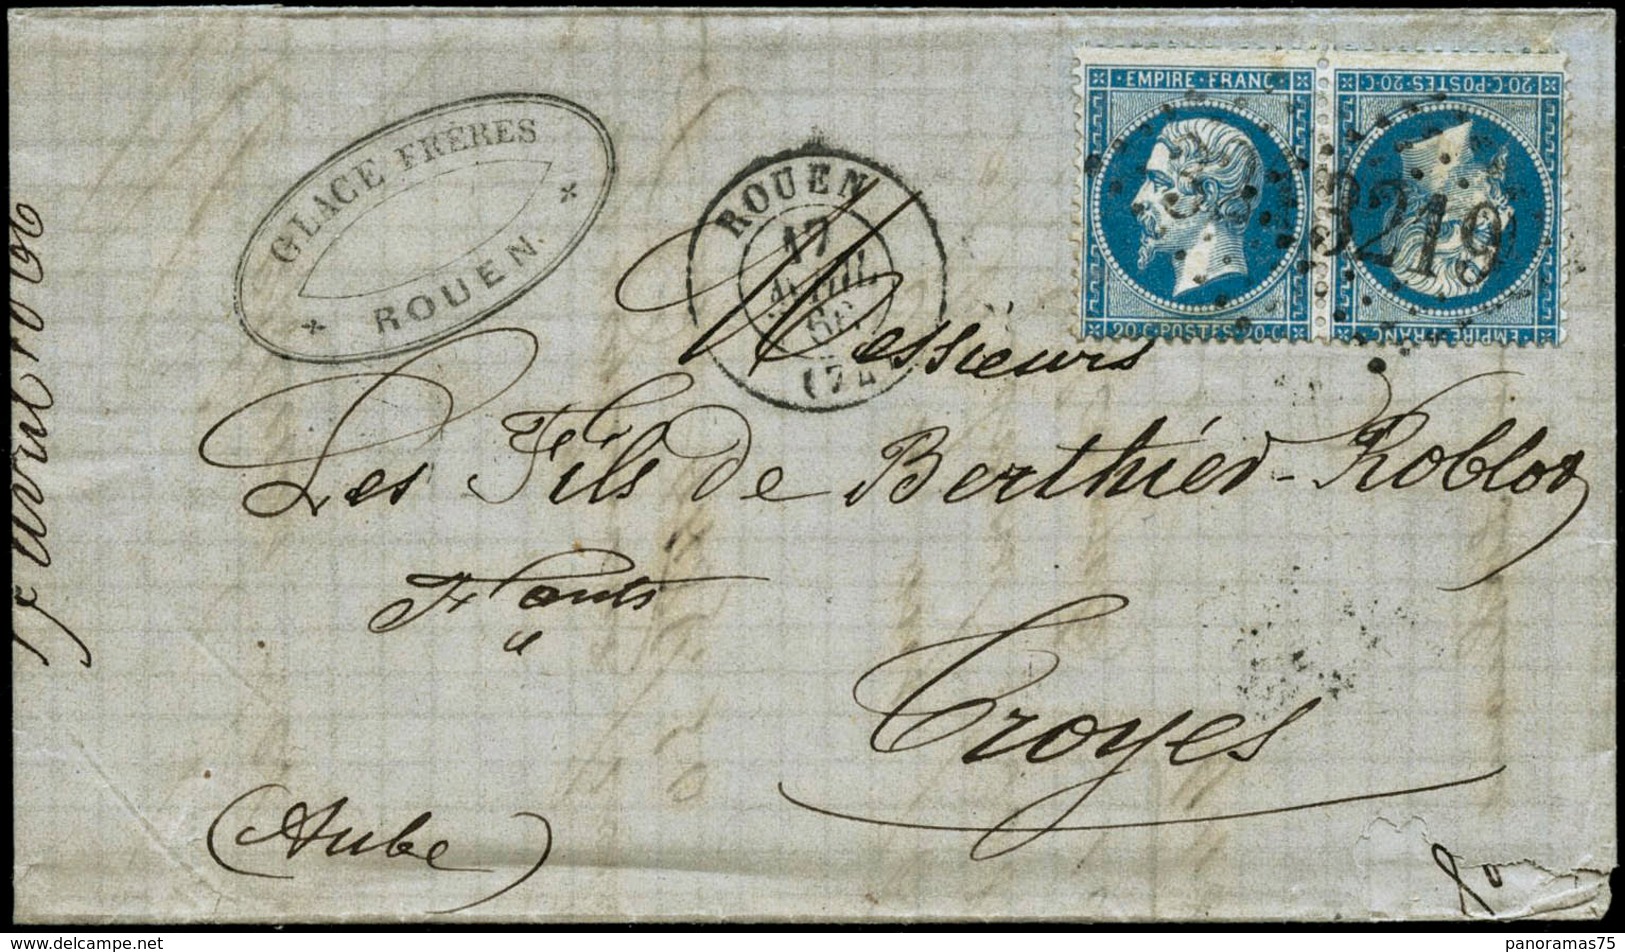 Lettre N°22b 20c Bleu, Paire Tête-bèche S/lettre Obl GC 3219 (Rouen) Pour Troyes Cachet D'arrivée Au Verso - TB - 1862 Napoleon III